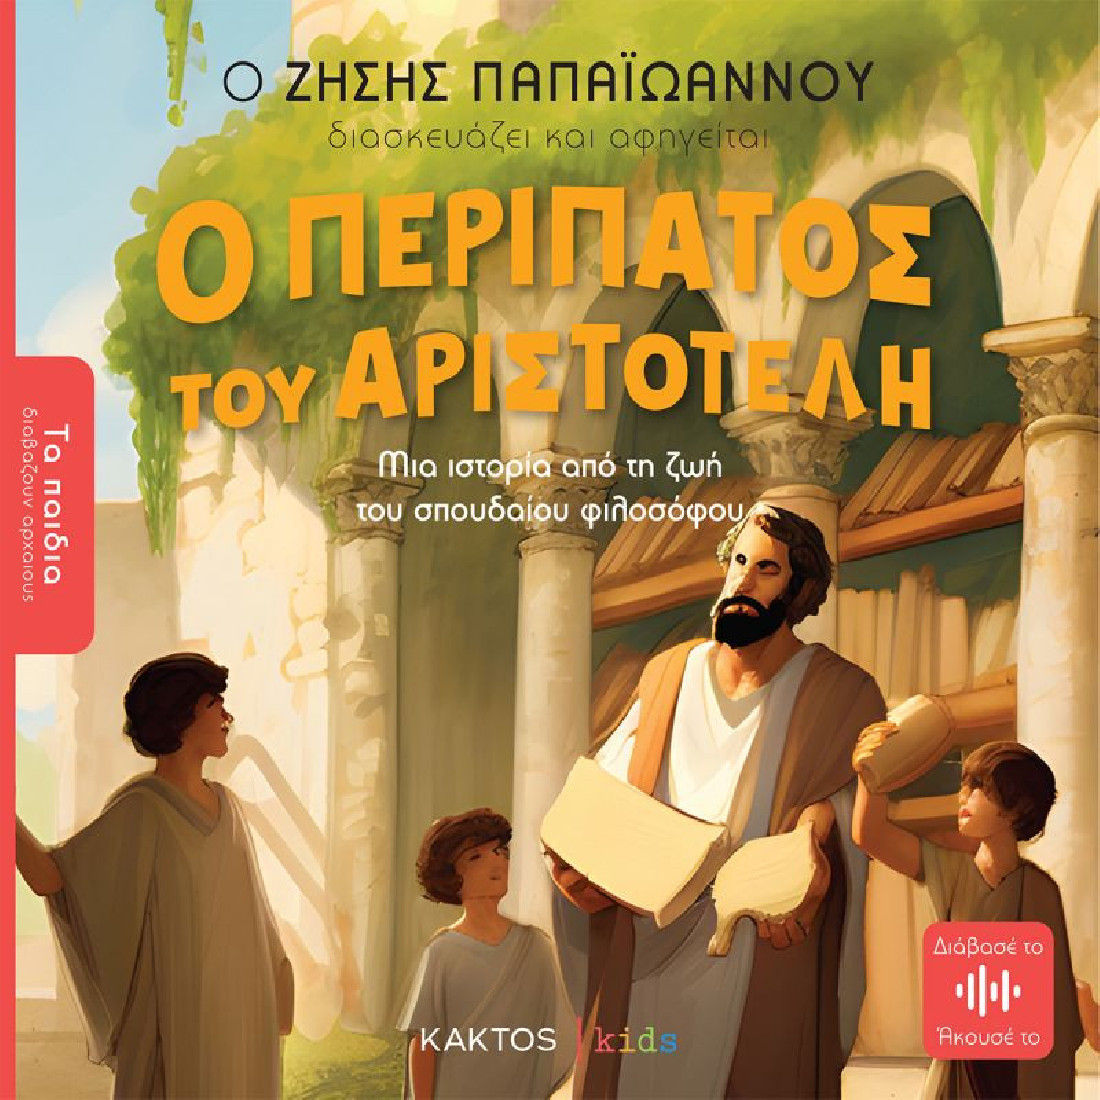 Τα παιδιά διαβάζουν αρχαίους: Ο περίπατος του Αριστοτέλη